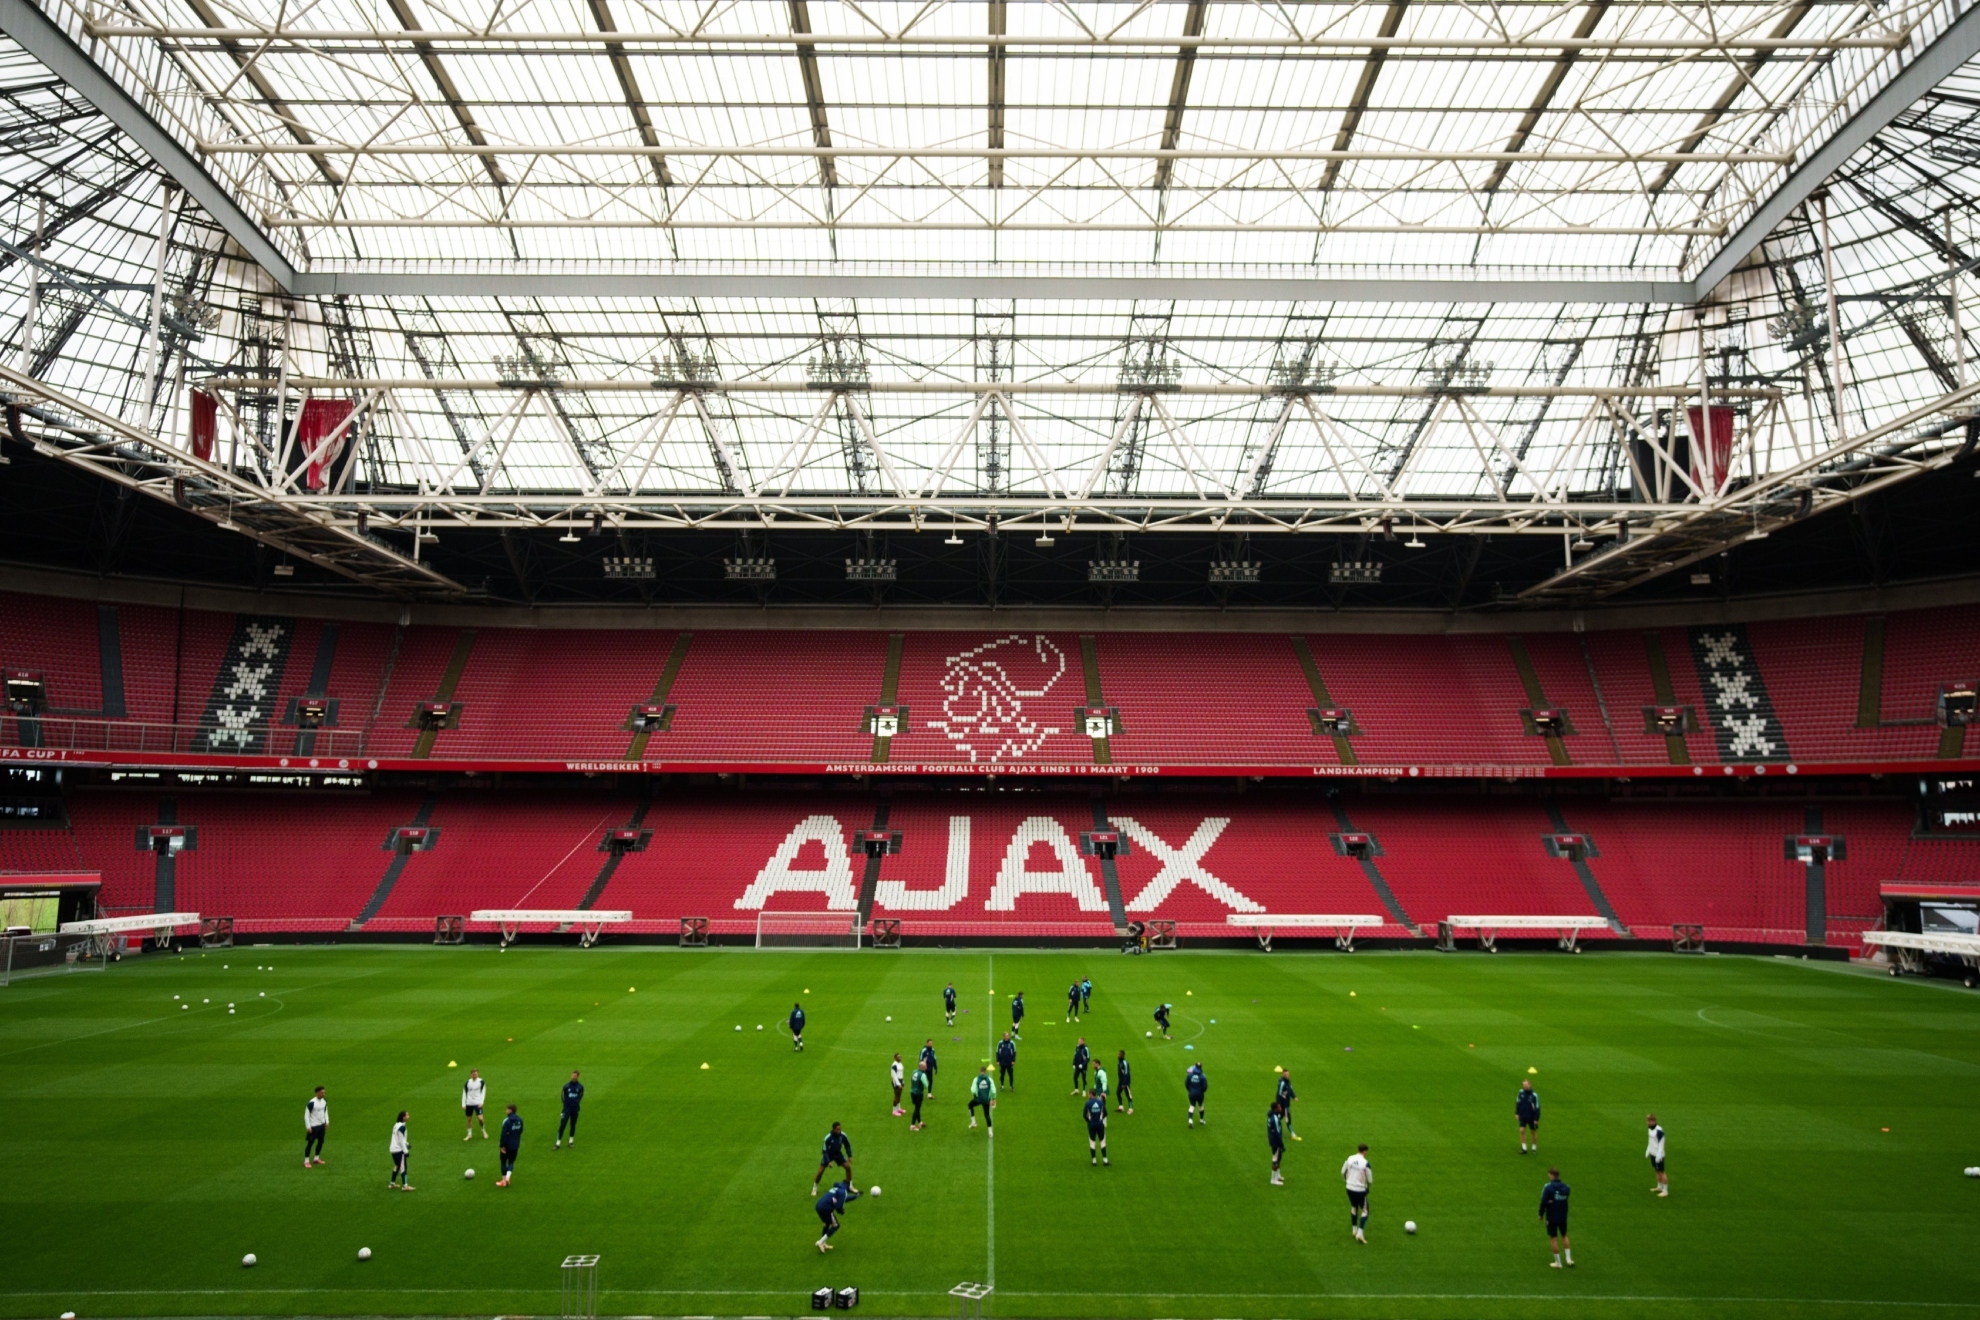 El Ajax, inmerso en el caos, despide a su director ejecutivo acusado de un delito penal: Estamos consternados